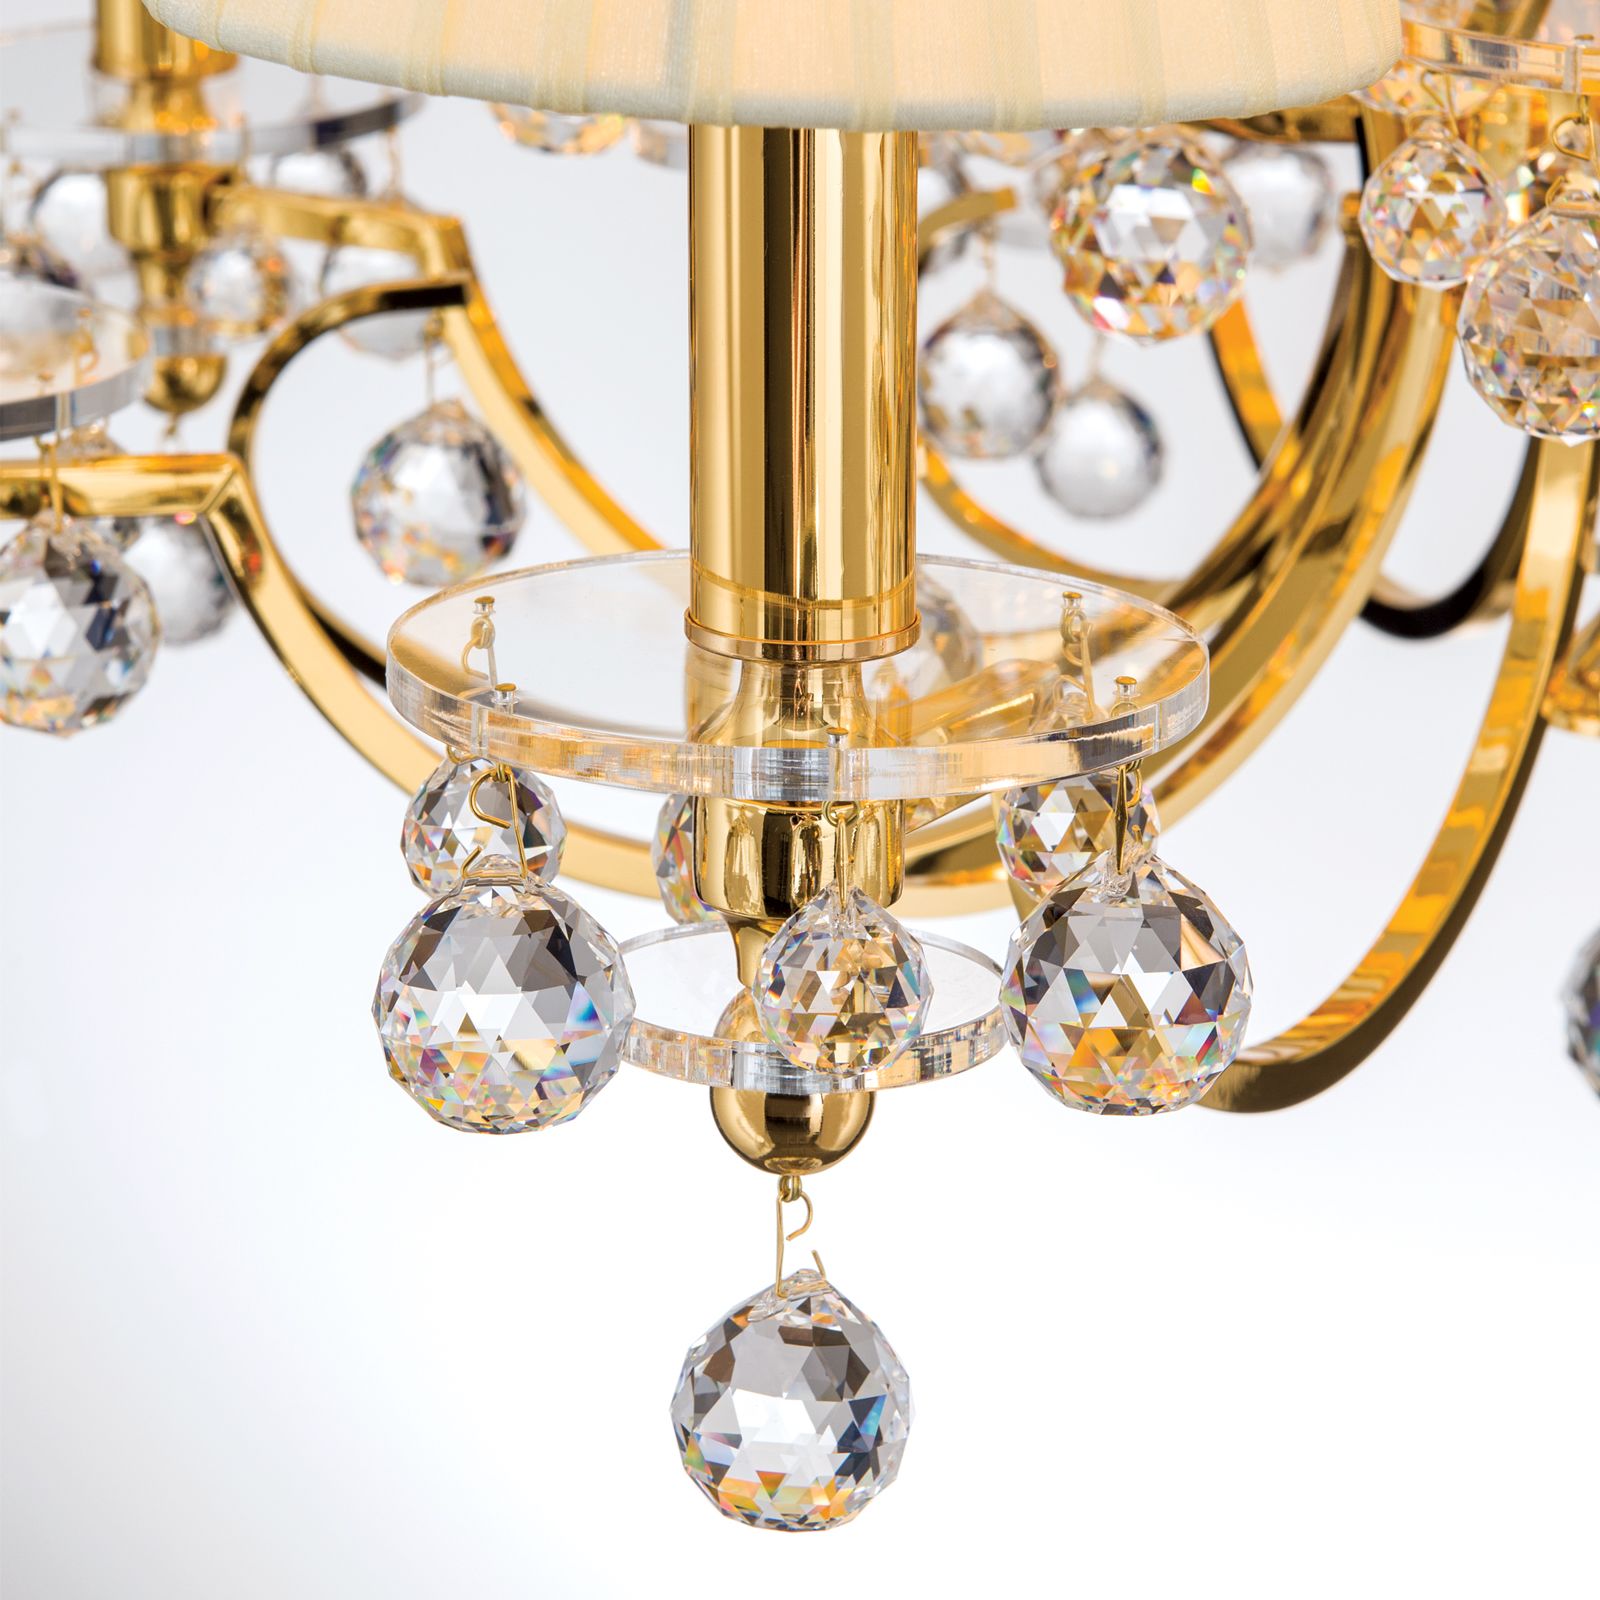 Luster Kristalldesign, Gold 12-flammig, champagner-färbigen mit Schirmen